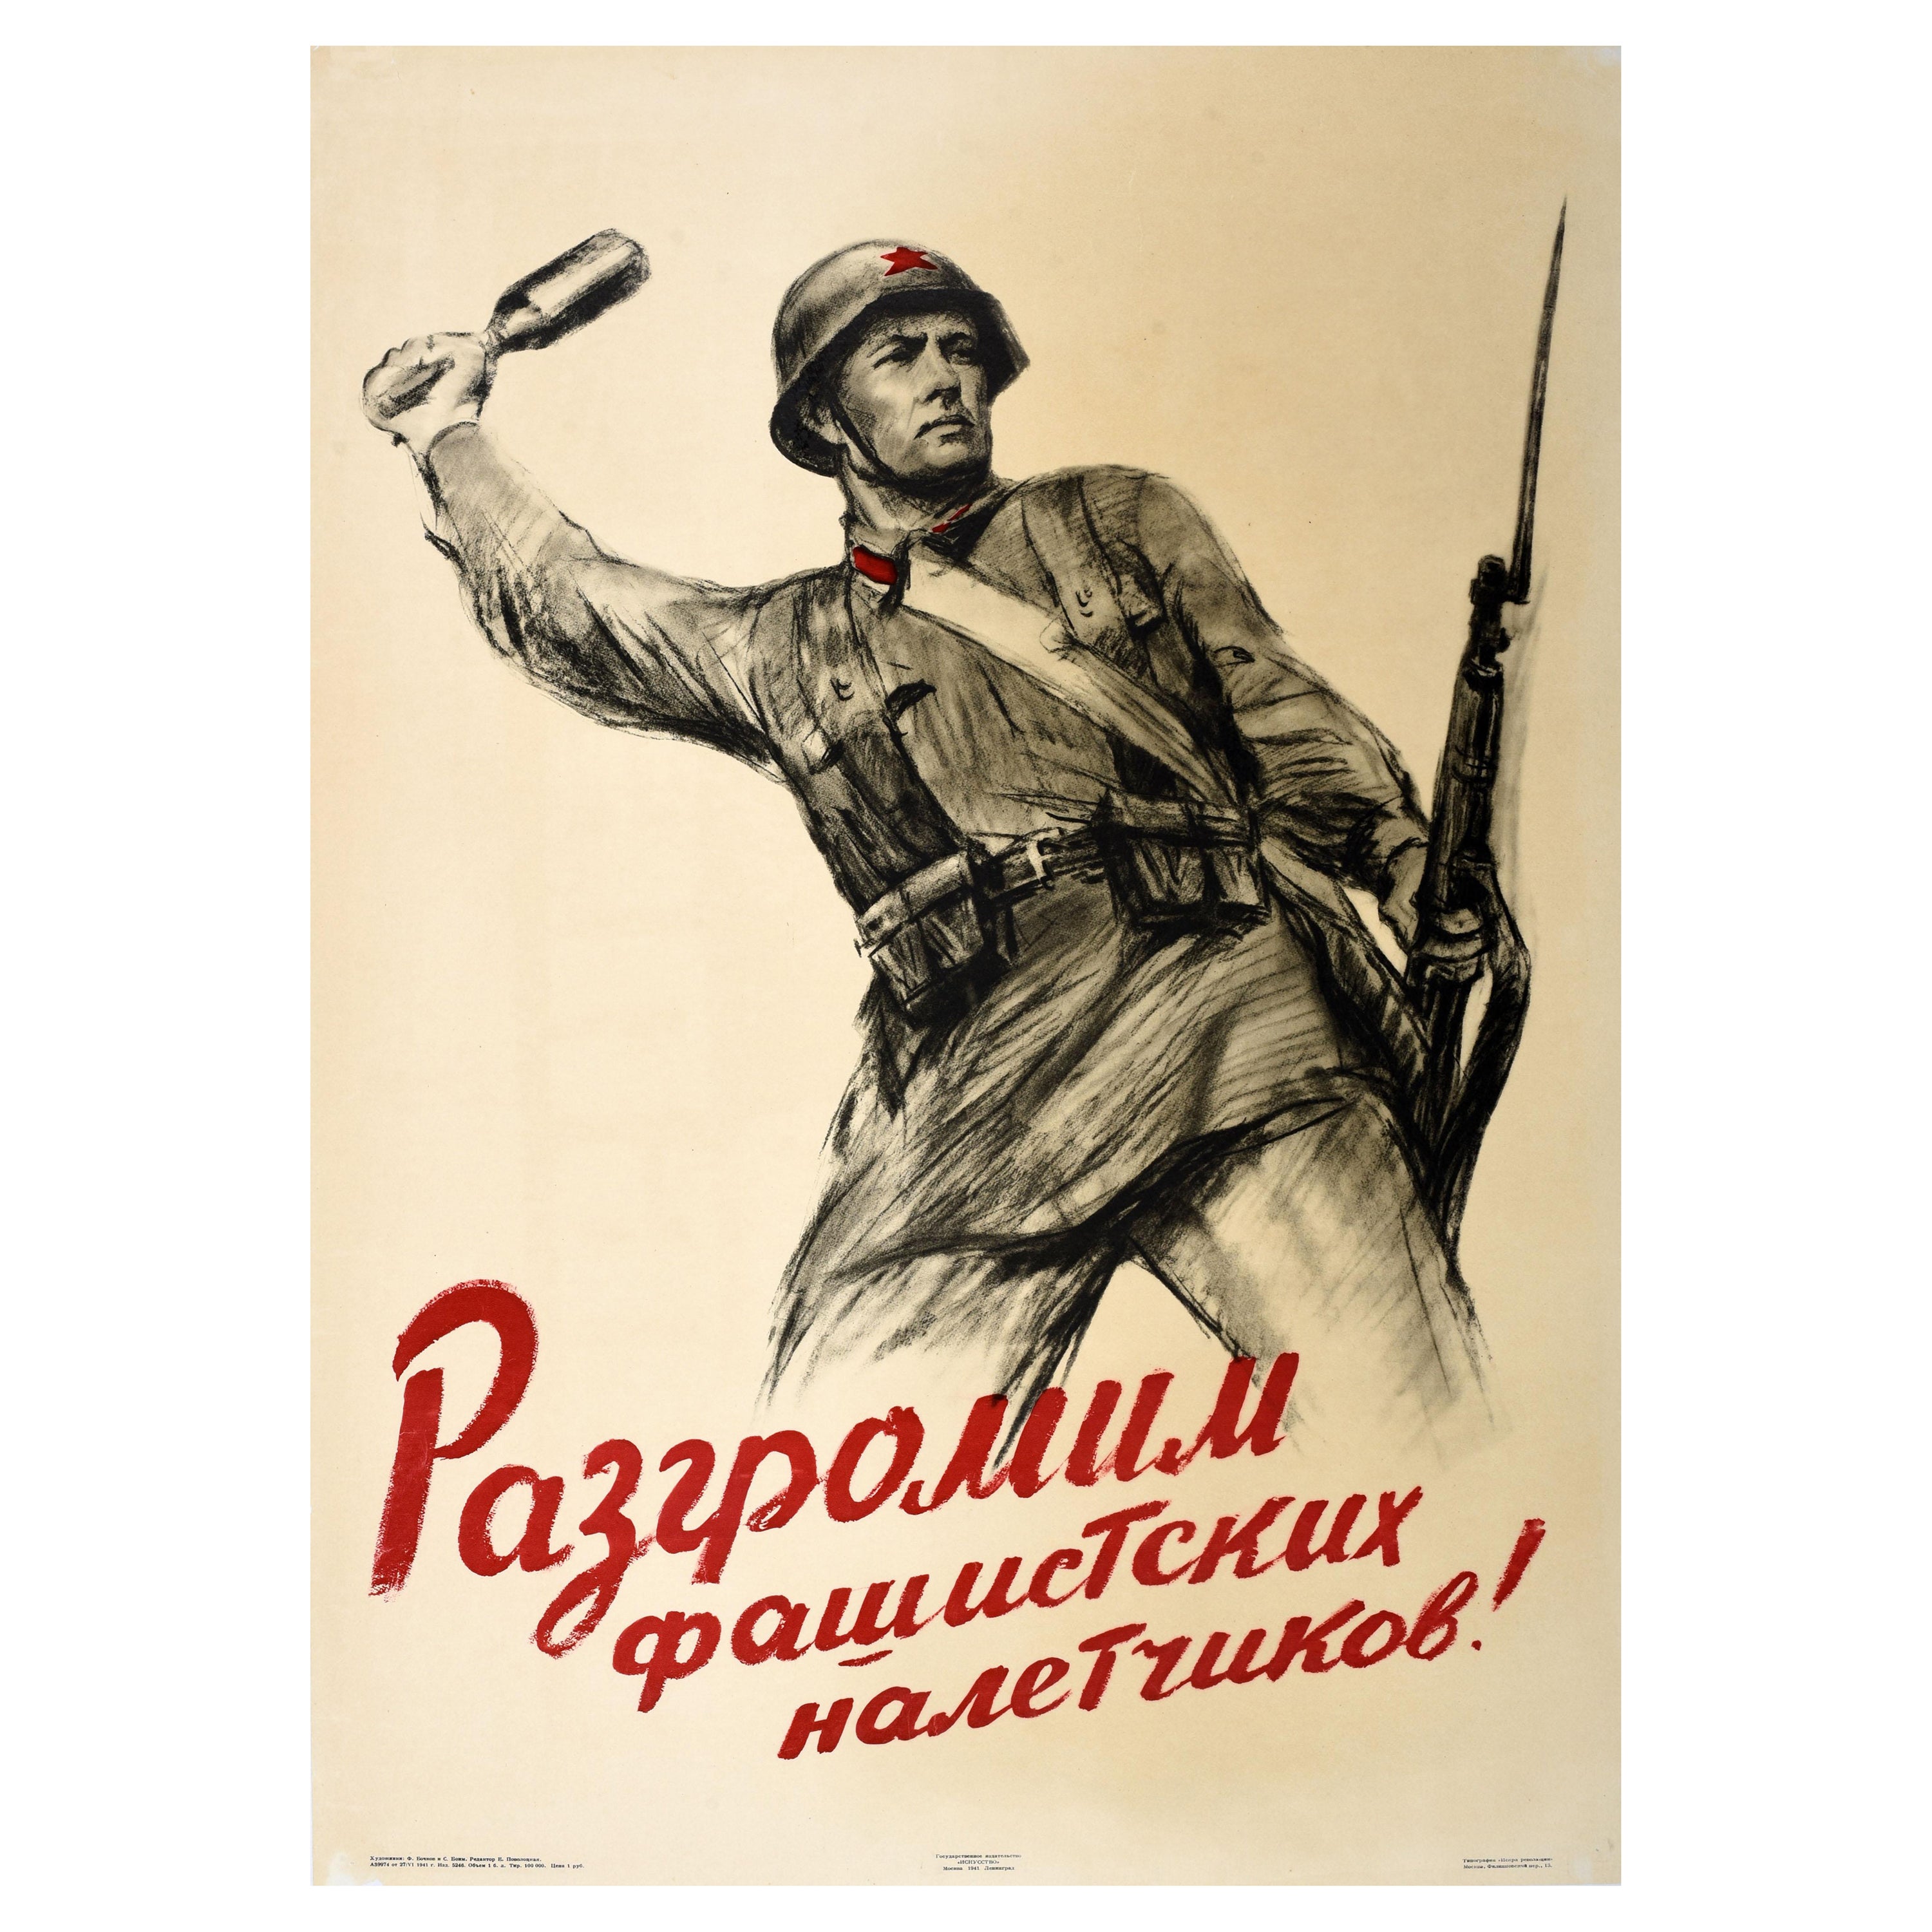 Rare affiche de propagande de la Seconde Guerre mondiale, défaillant les attaqueurs Fascistes, armée de l'URSS